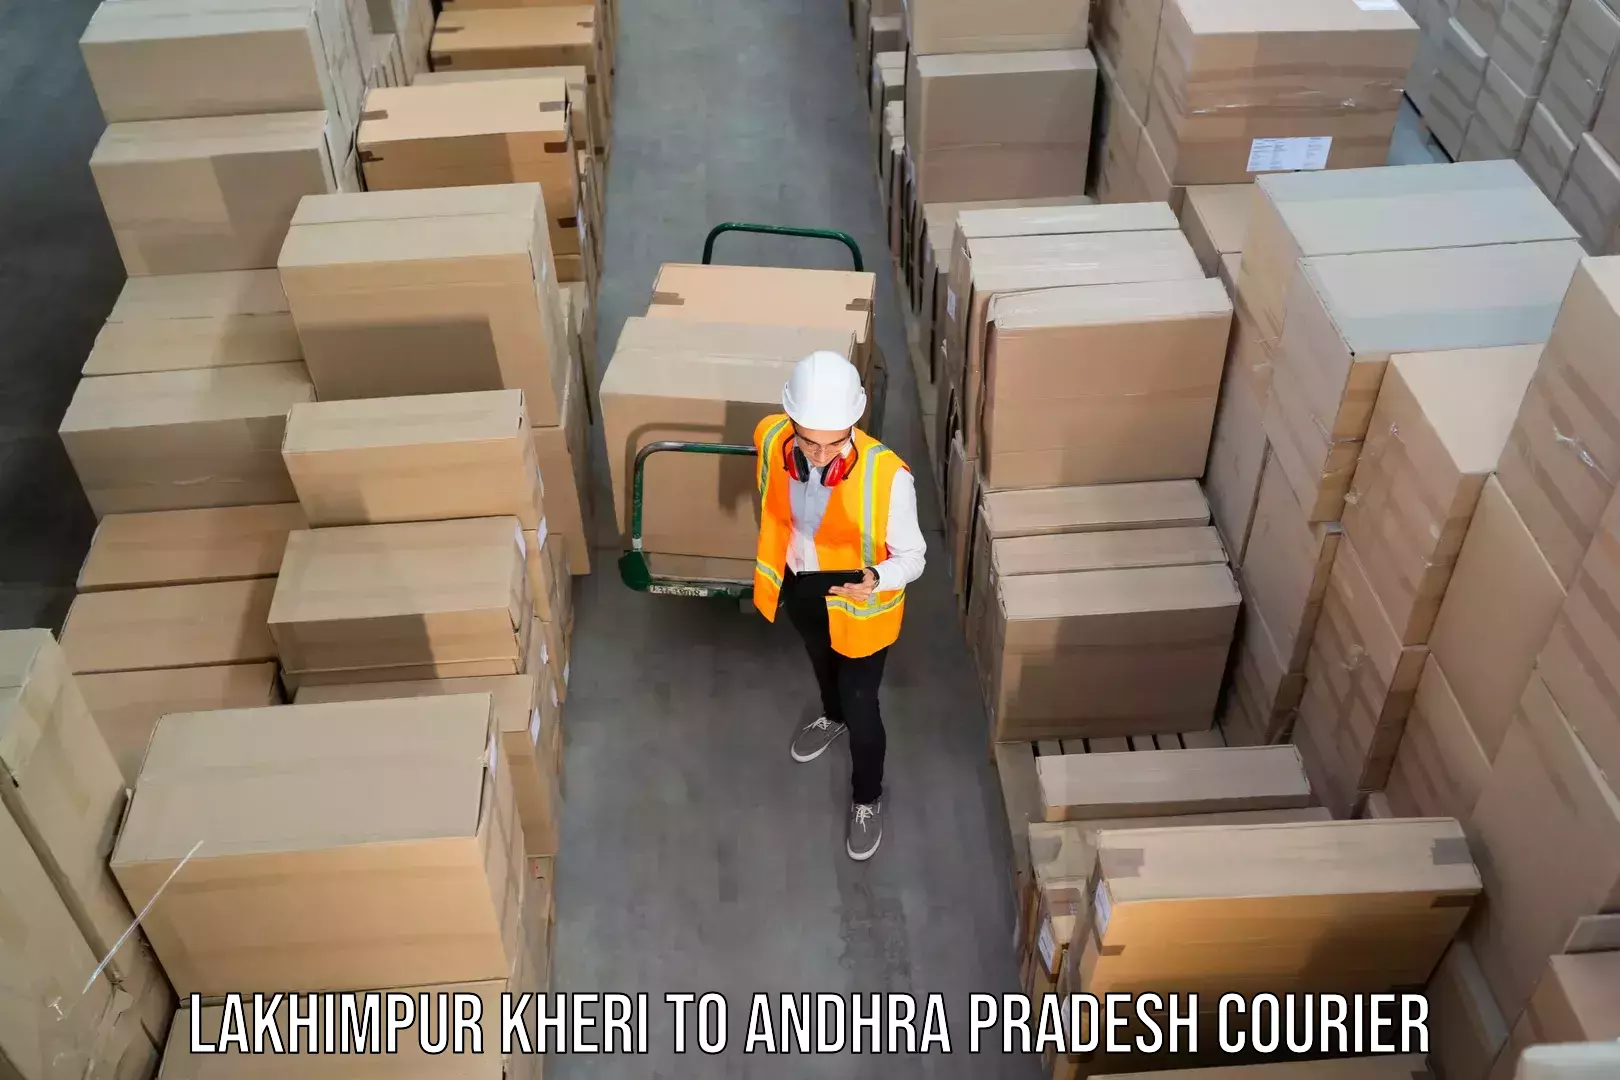 Cost-effective courier options Lakhimpur Kheri to Puttur Tirupati